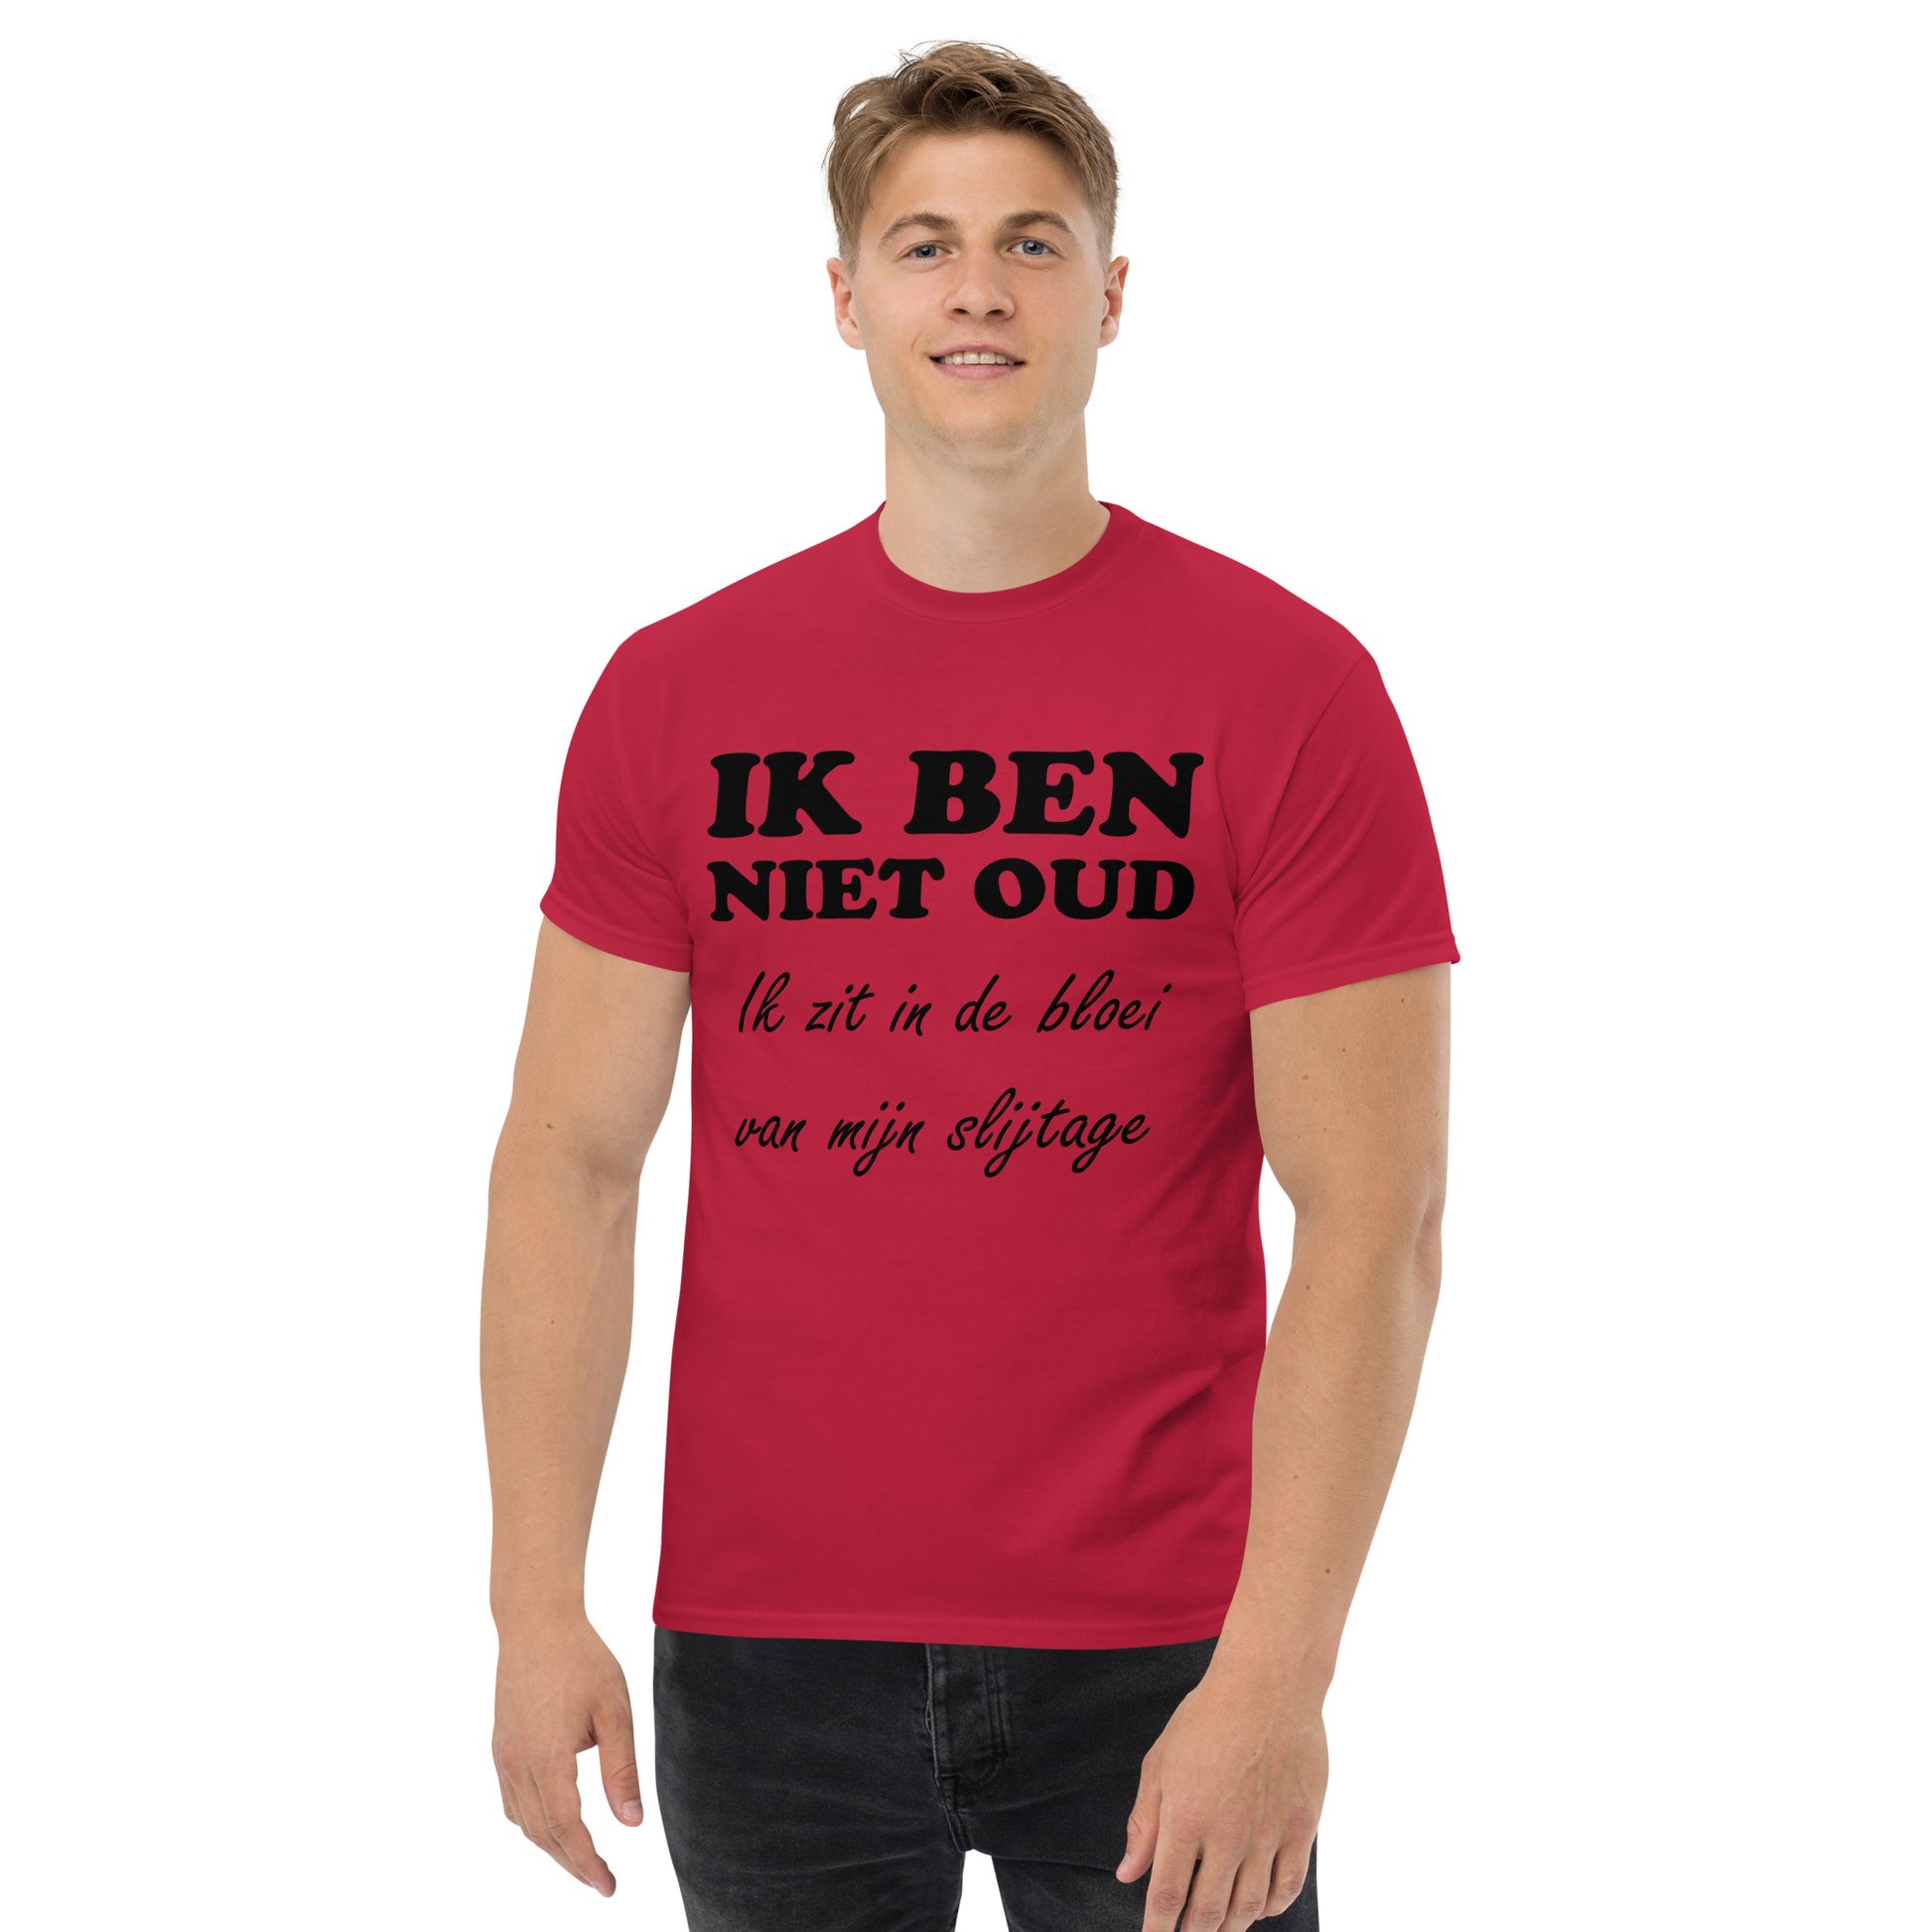 Cardinal T-shirt with the text "IK BEN NIET OUD ik zit in de bloei van mijn slijtage"